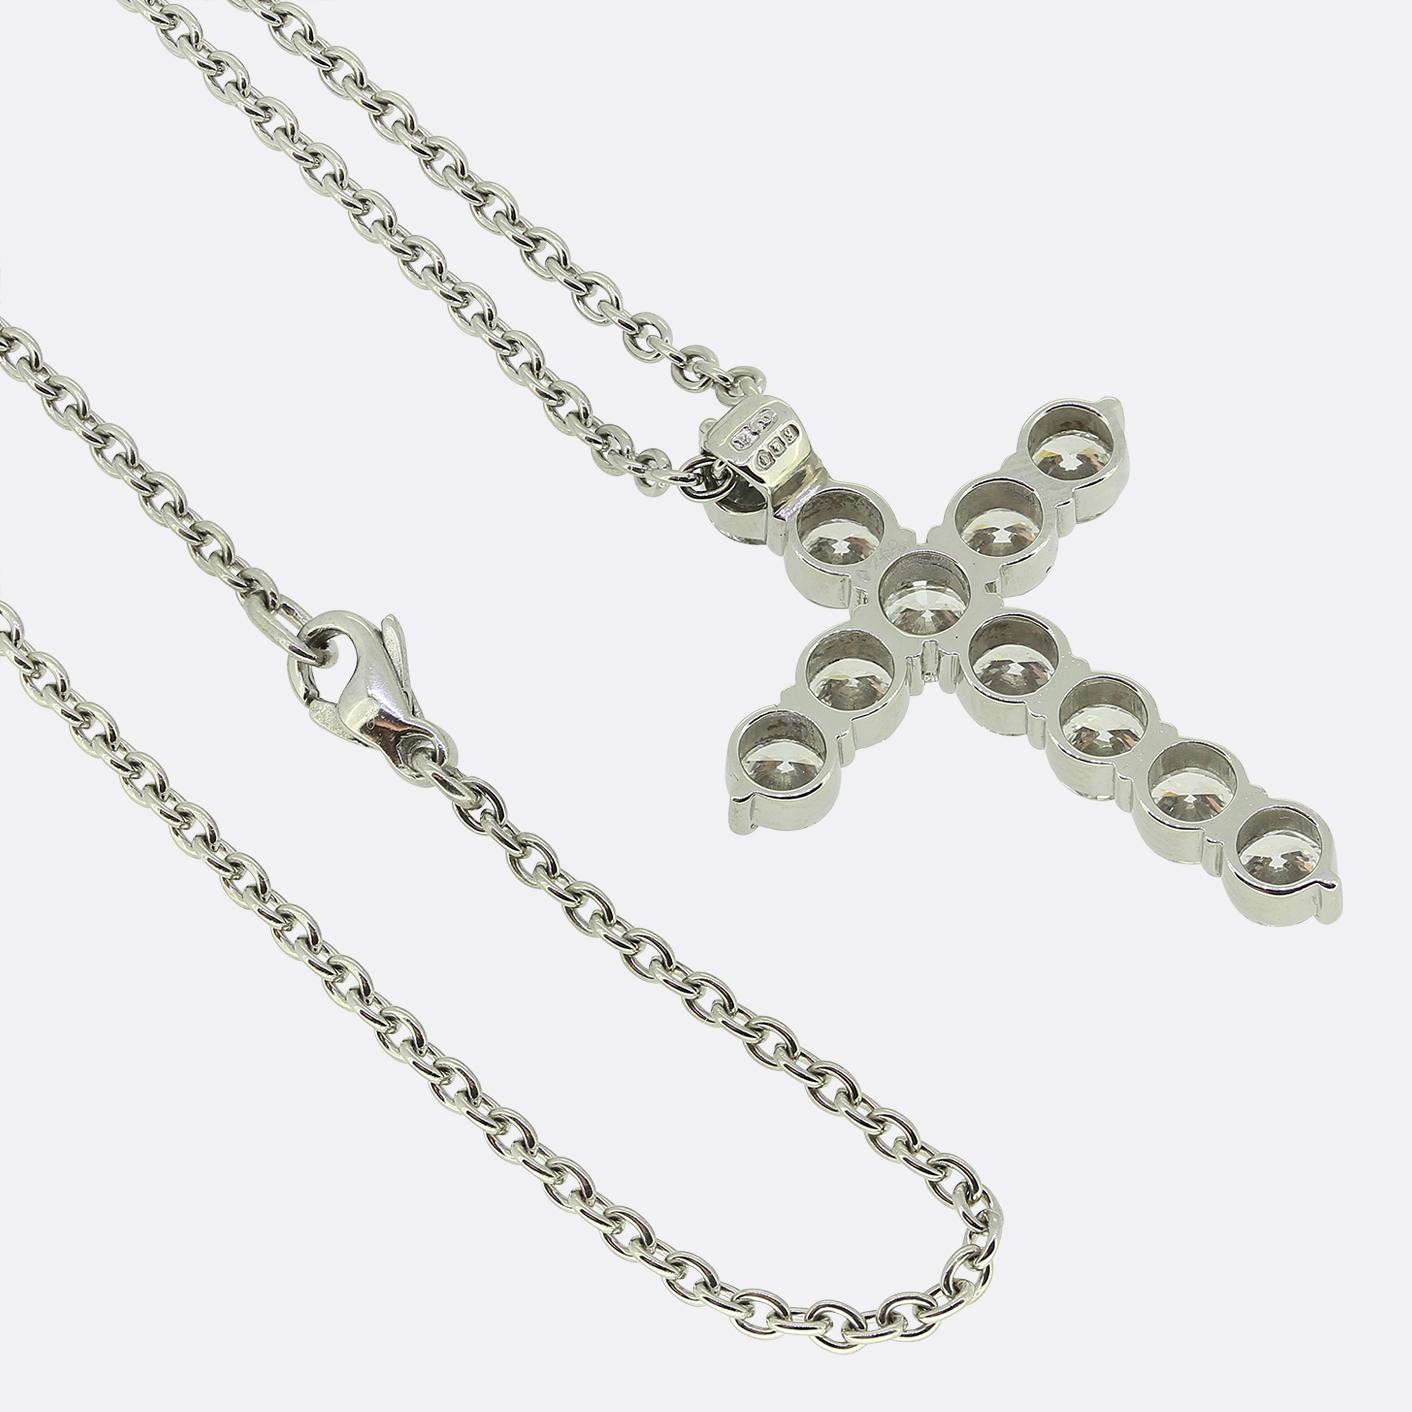 Boodles 2.80 Carat Diamond Cross Pendant Necklace